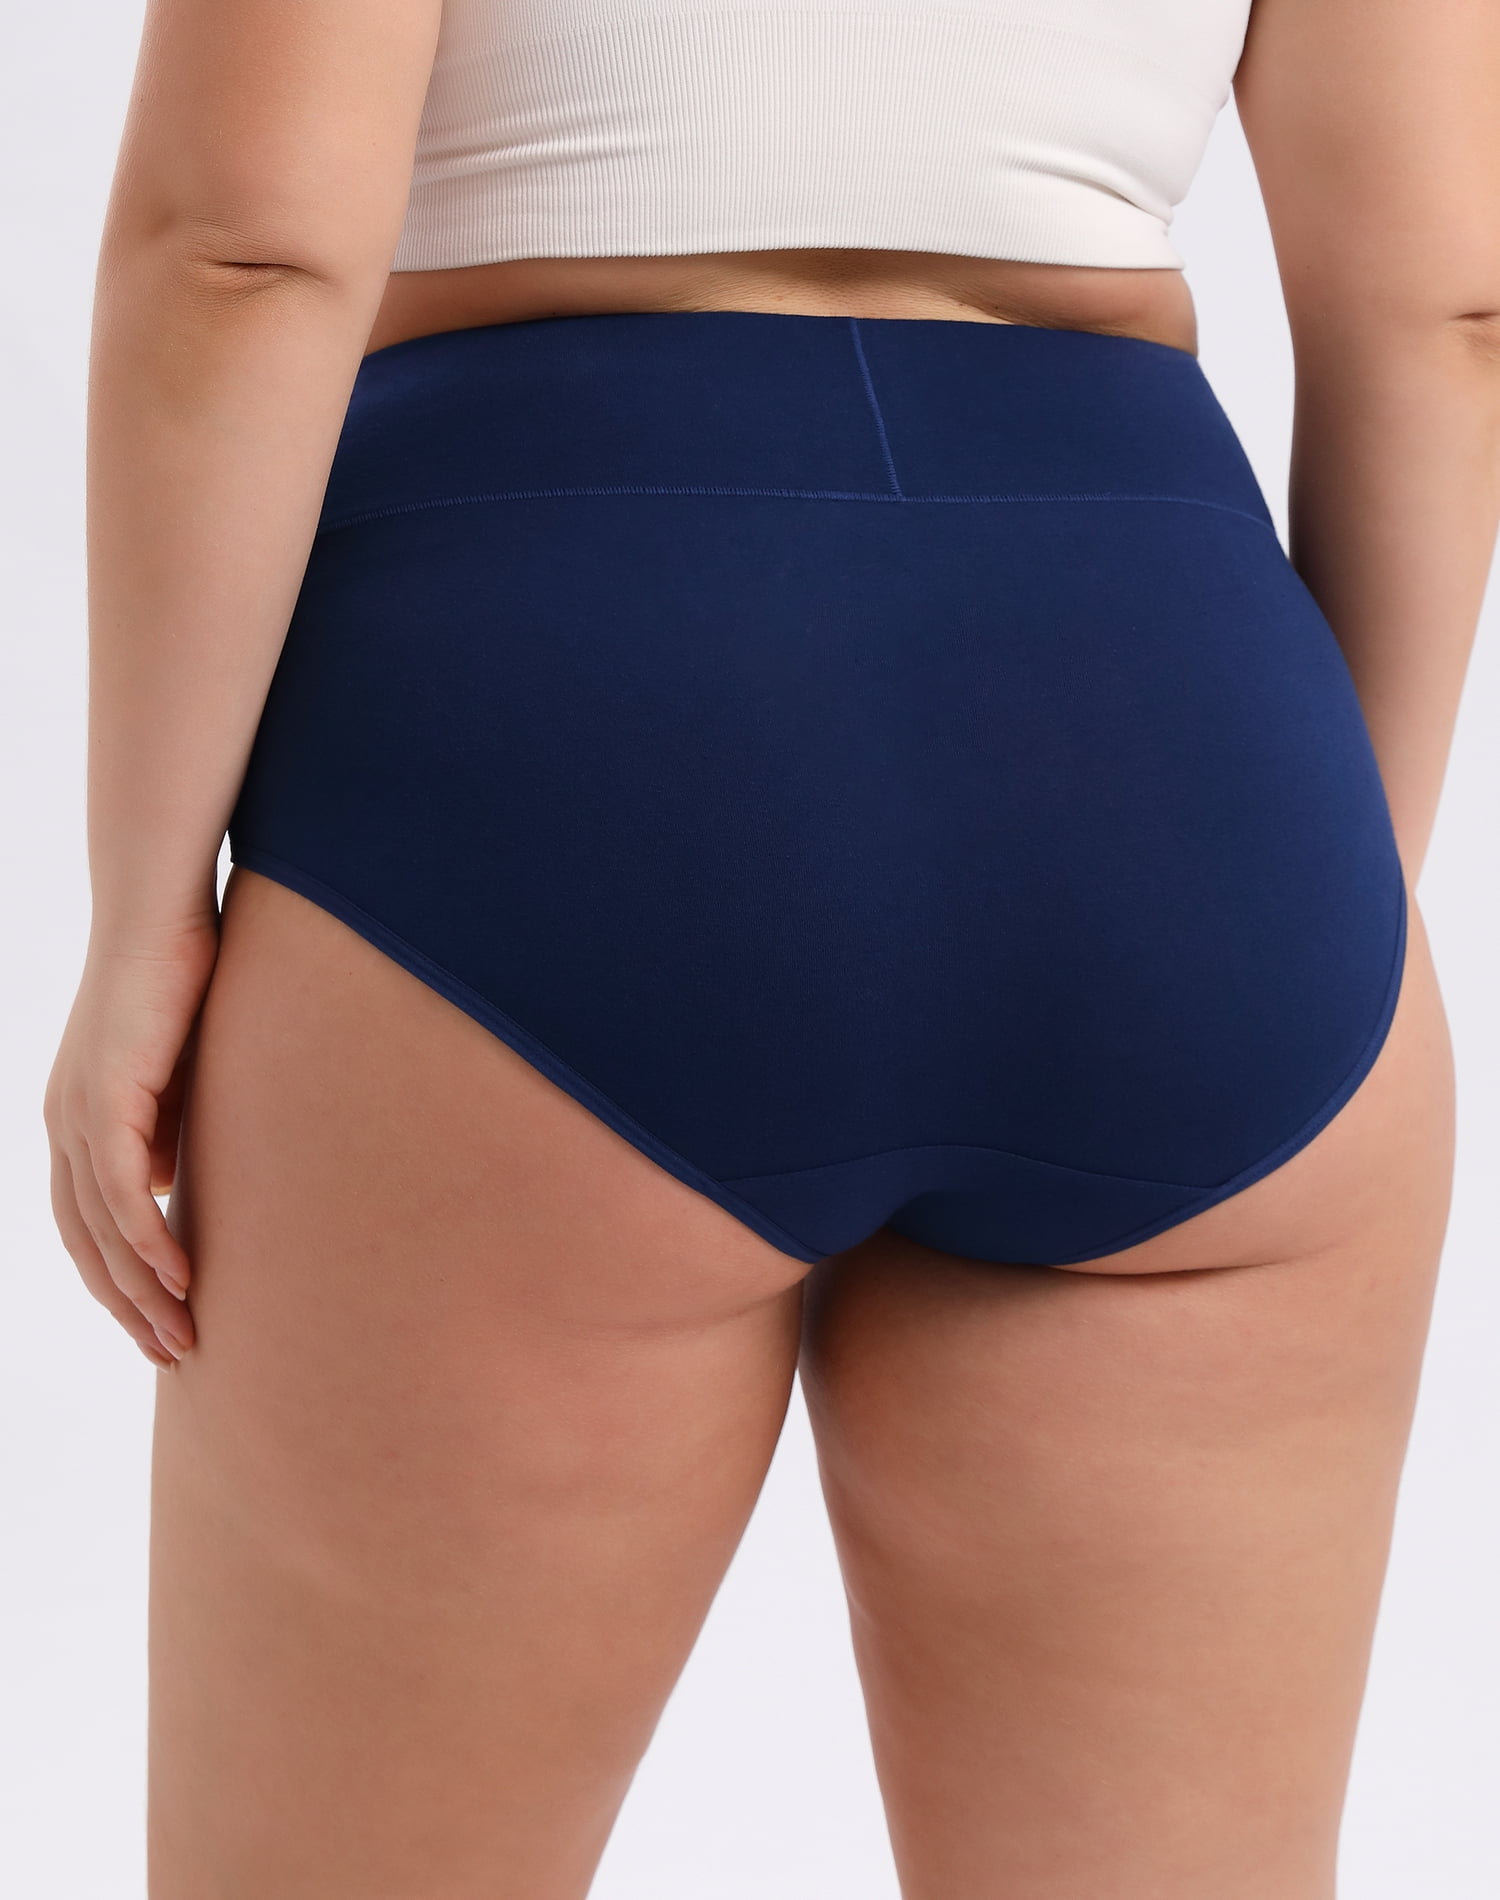 INNERSY Women's Plus Size XL-5XL Cotton Underwear High